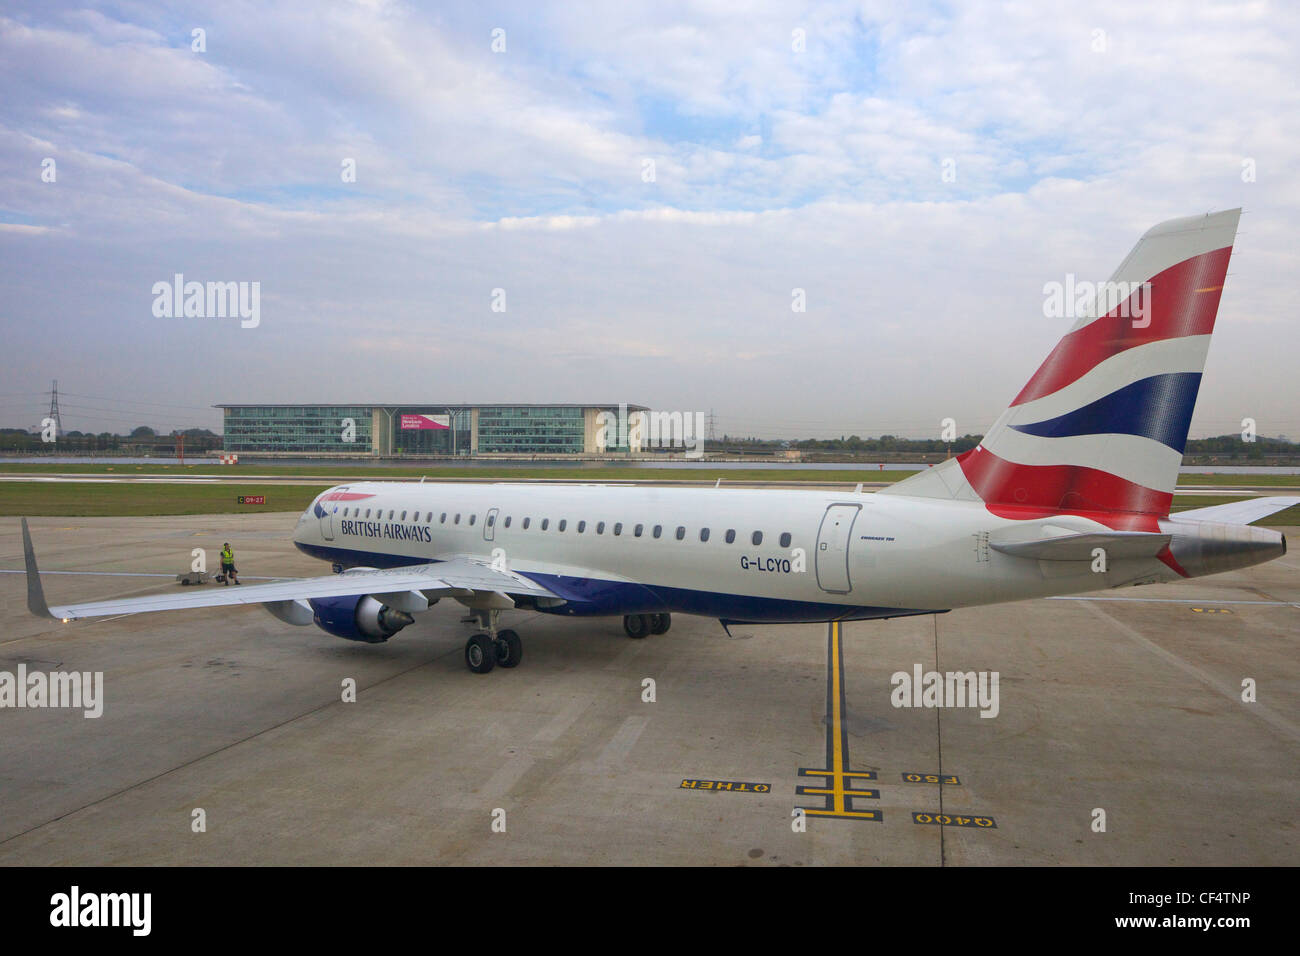 Les passagers de British Airways jet sur stand à City Airport, London, England, UK, Royaume-Uni, GO, Grande-Bretagne, Îles britanniques, Banque D'Images